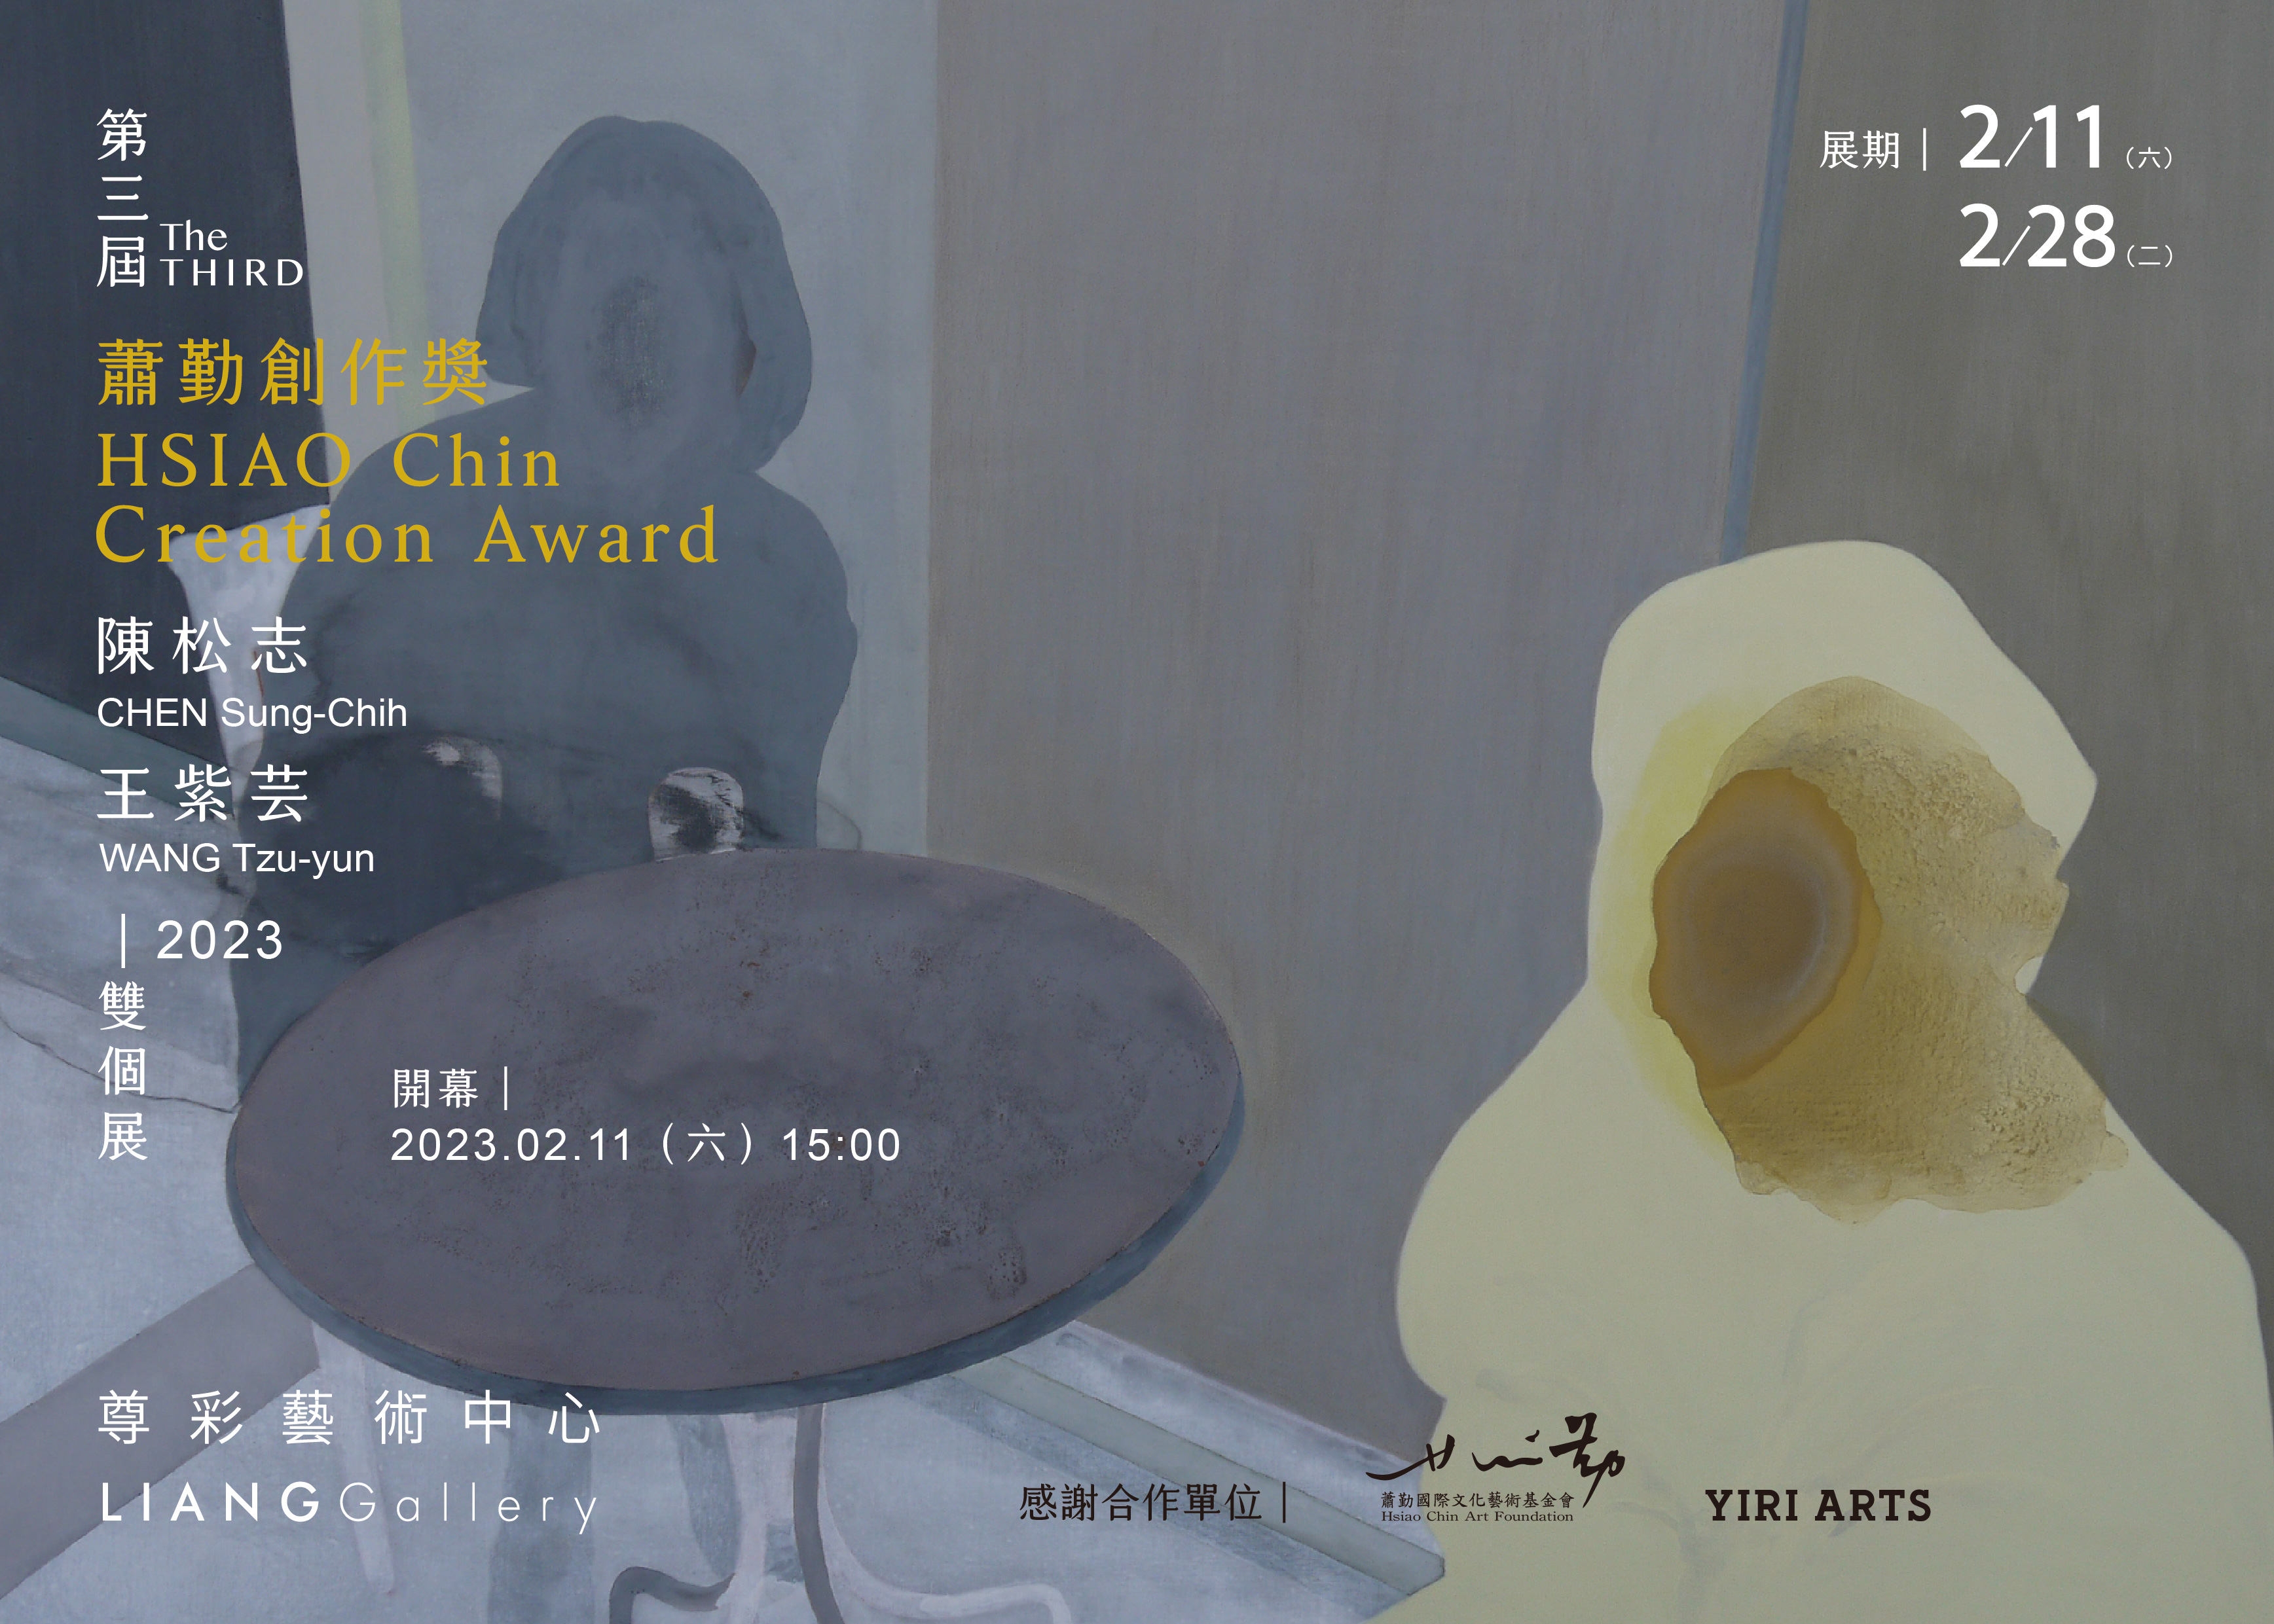 The 3rd Hsiao Chin Creation Award – CHEN Sung-Chih, WANG Tzu-Yun Duo Solo Exhibition